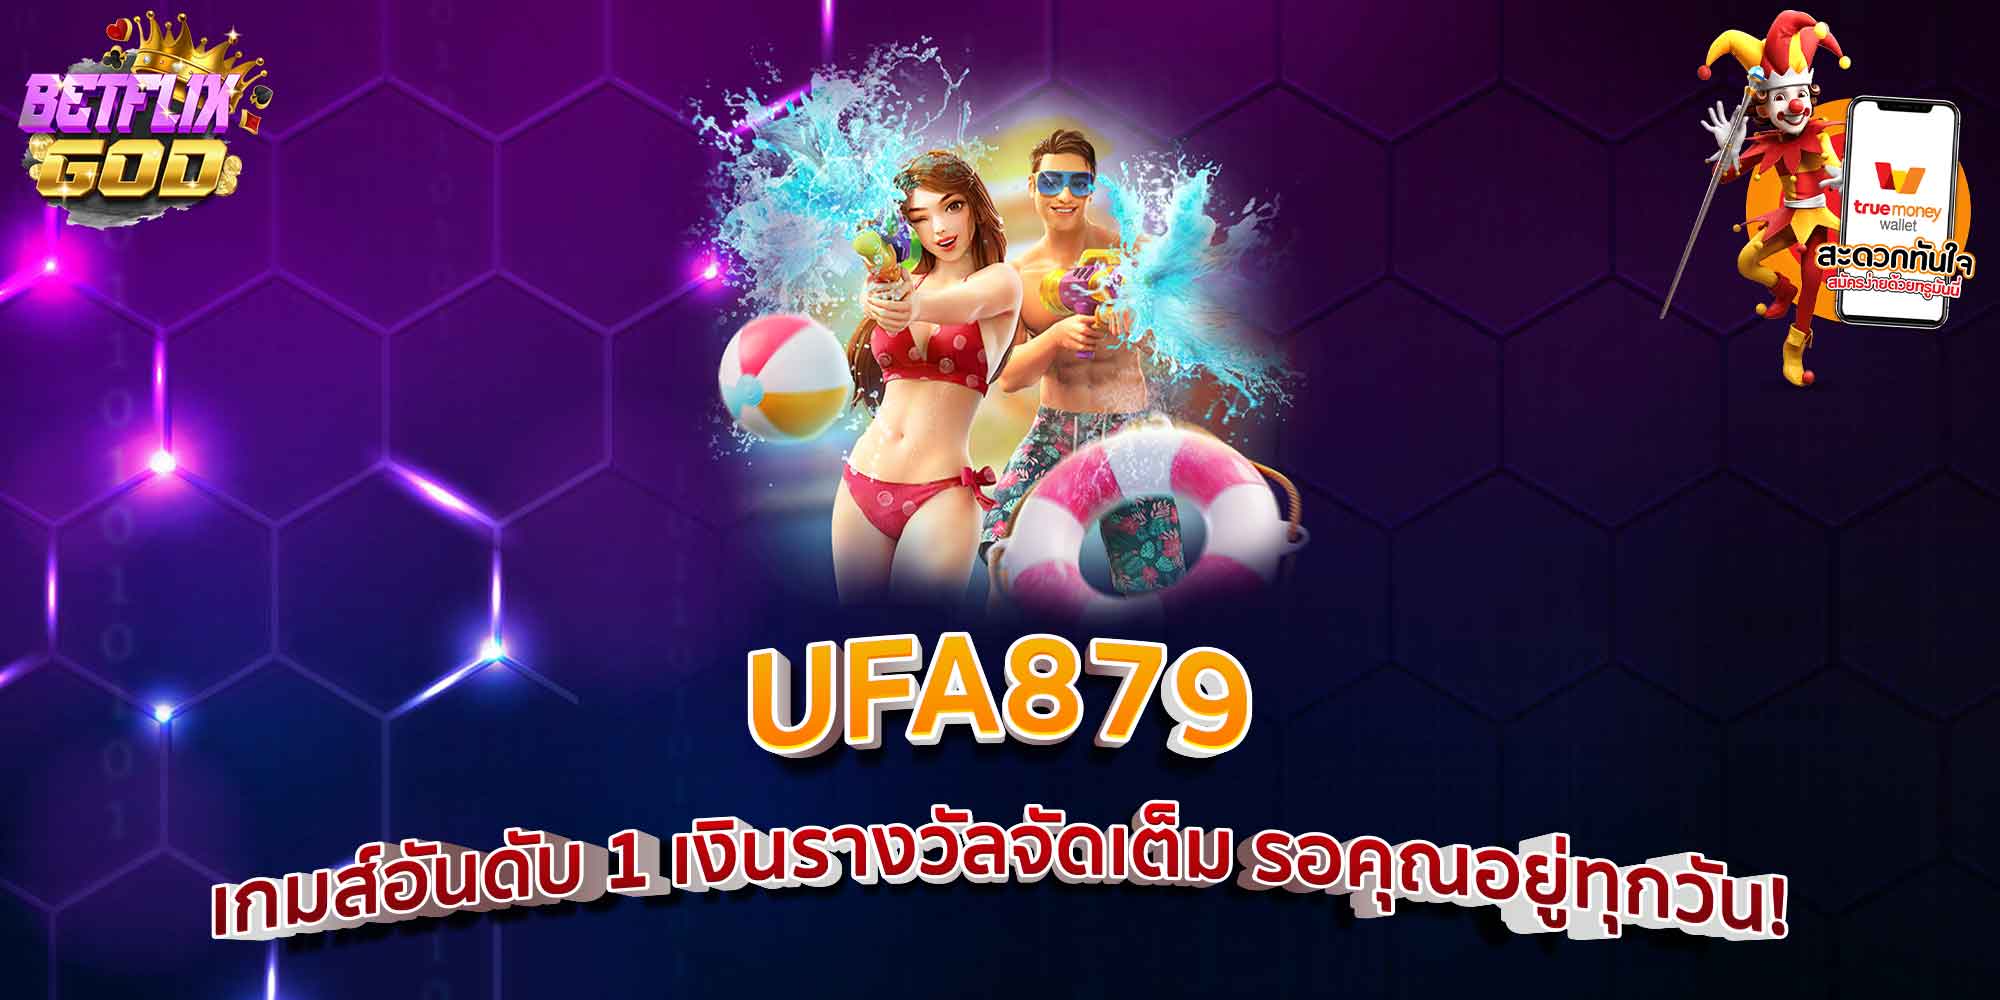 UFA879 เกมส์อันดับ 1 เงินรางวัลจัดเต็ม รอคุณอยู่ทุกวัน!